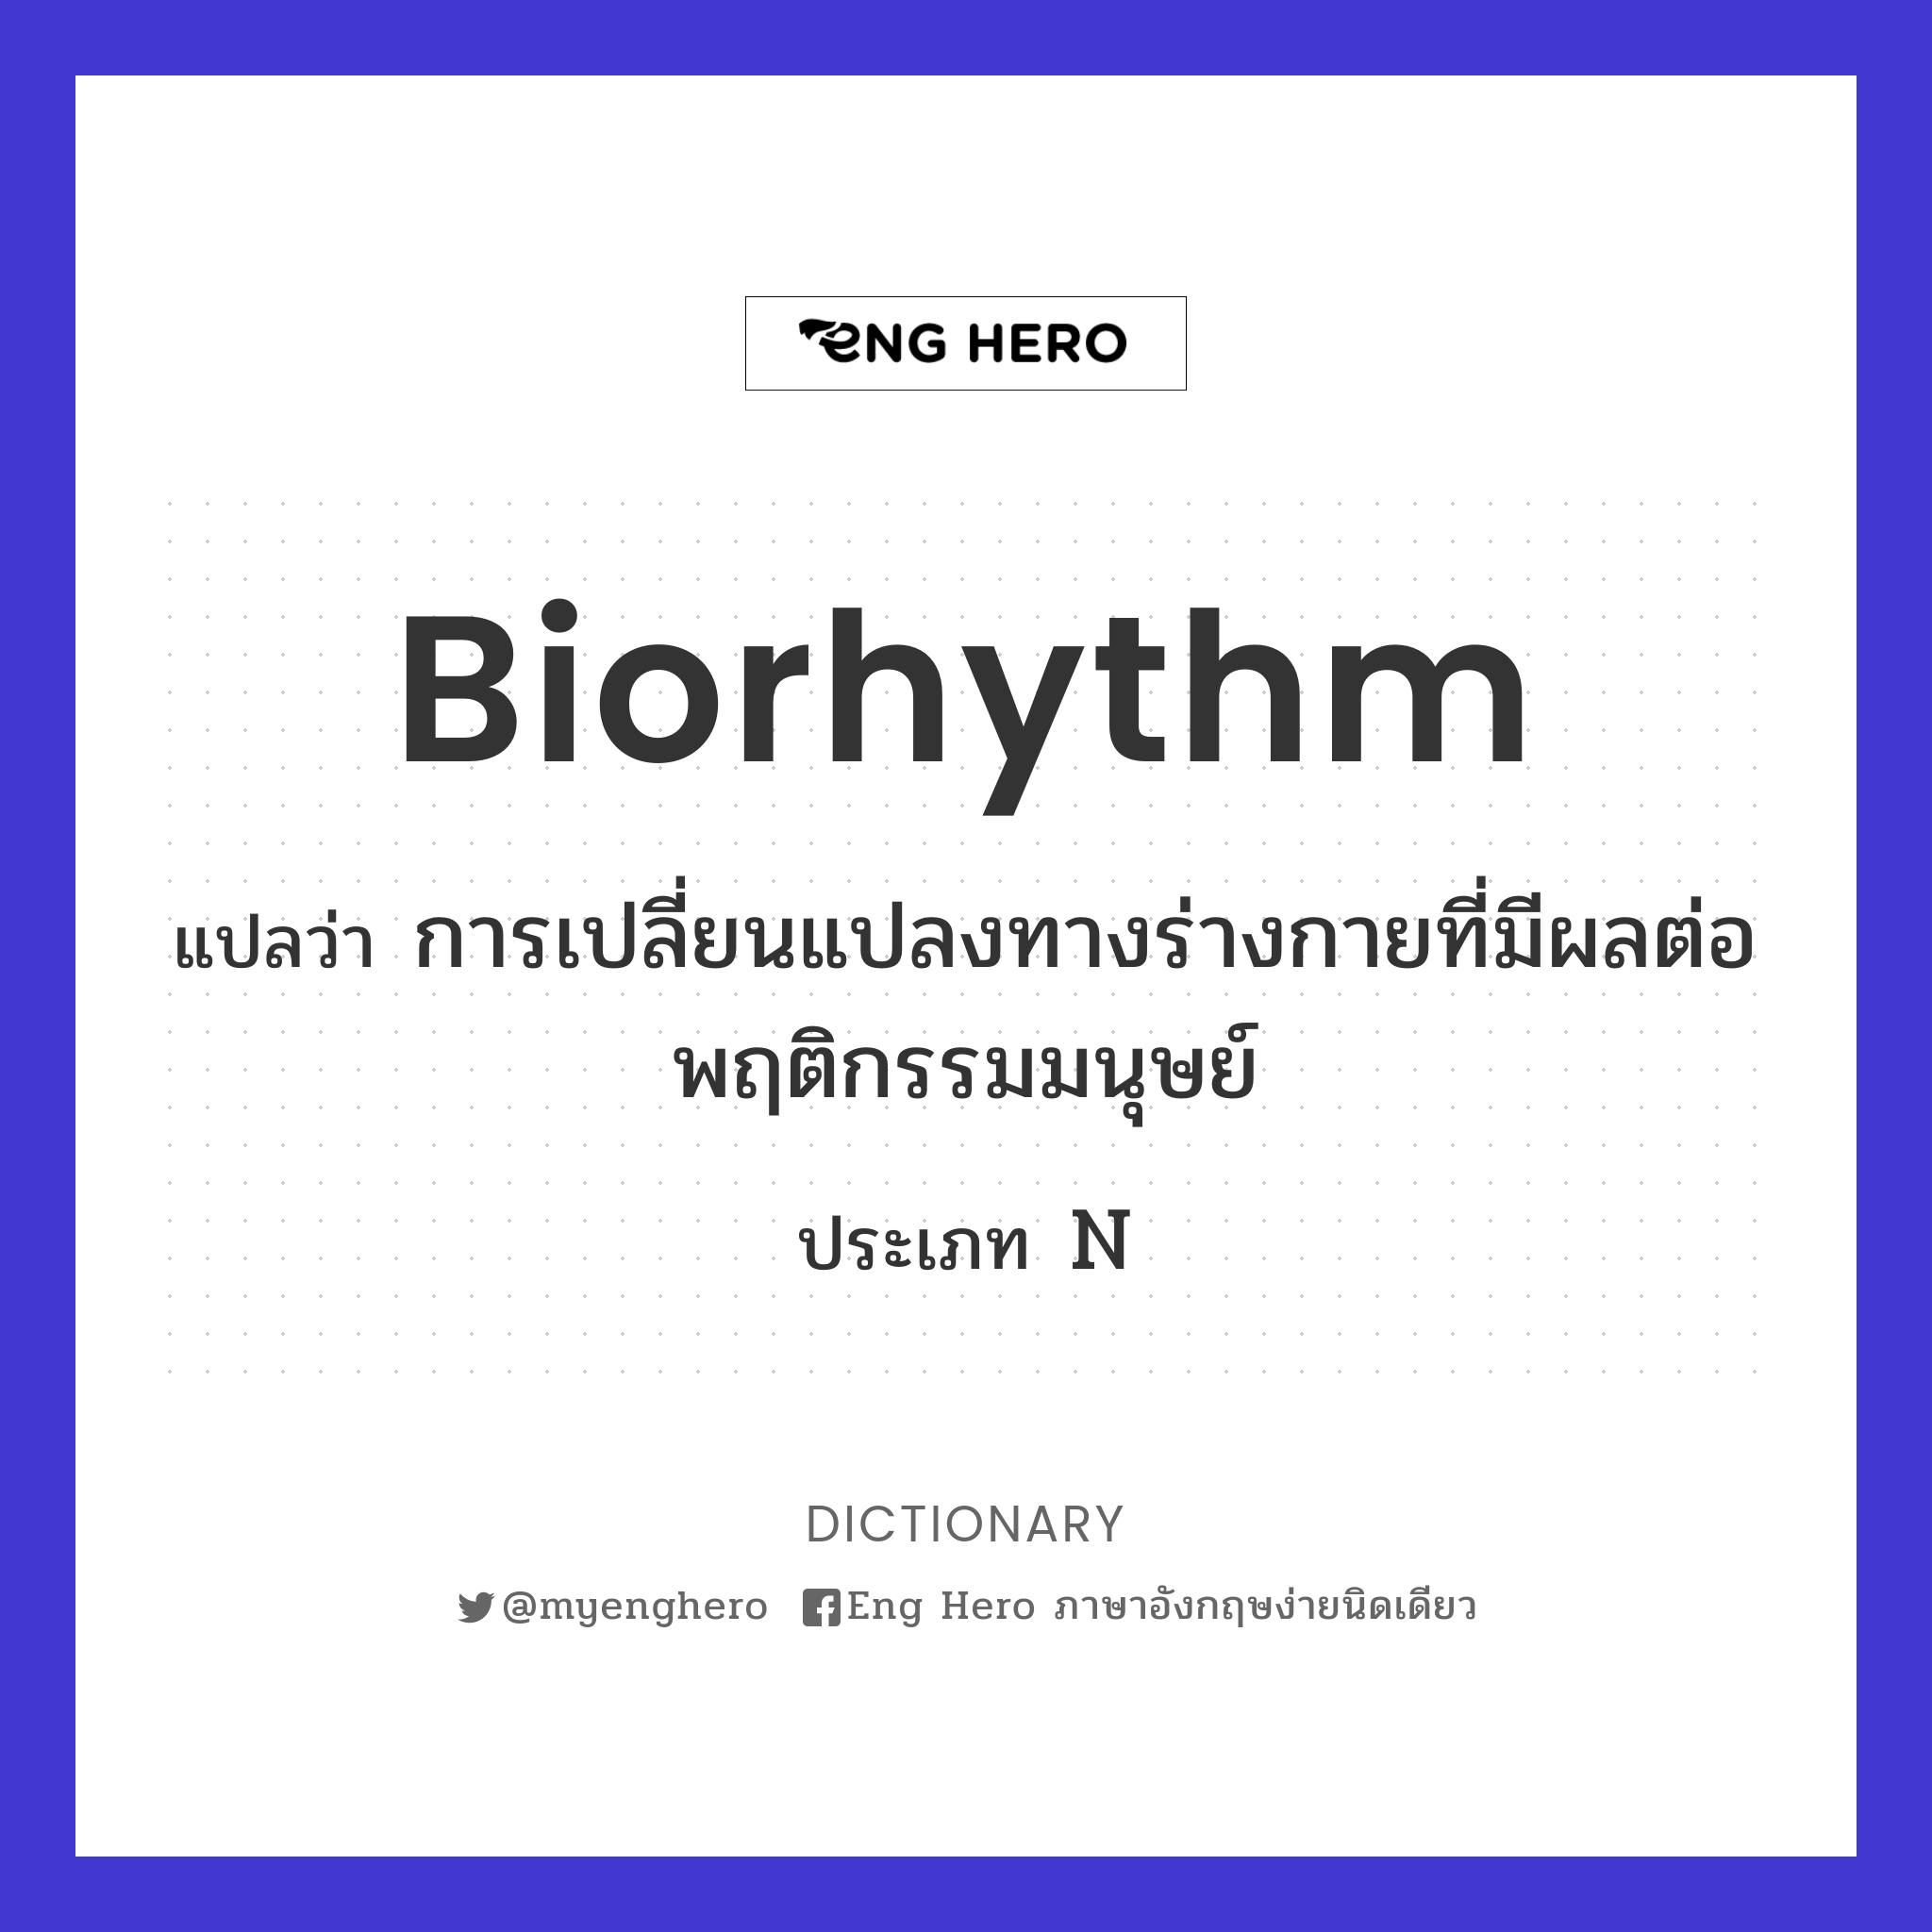 biorhythm